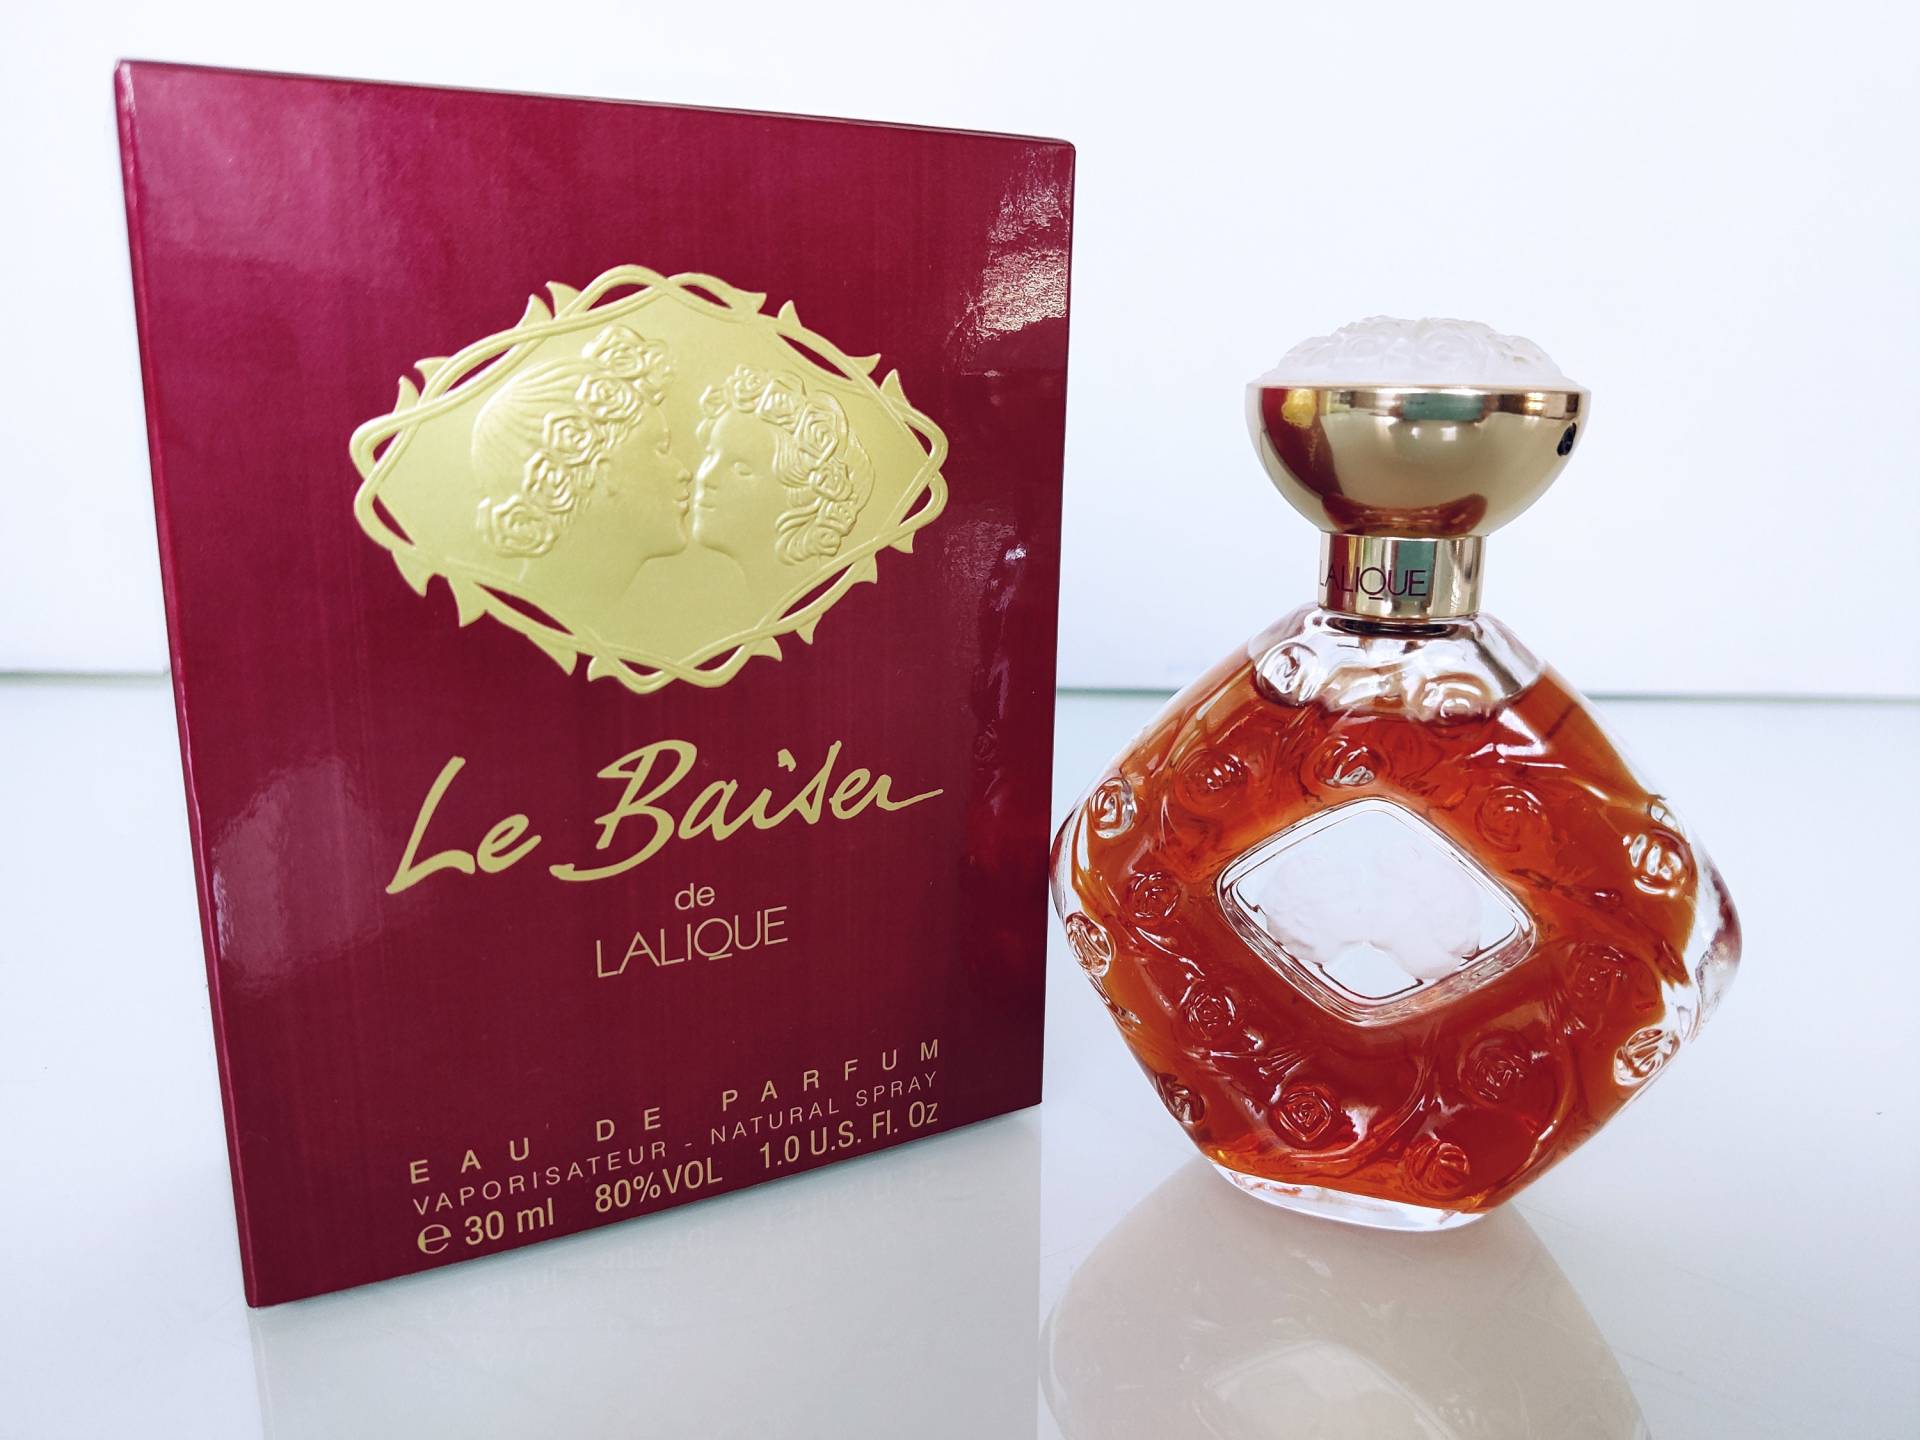 Lalique - "Le Baiser" De Eau Parfum Damen Parfüm Von Natural Spray 30 Ml/1 Us Fl.oz. Nie Benutzt. Brandneu von Etsy - MyVintageGadgets